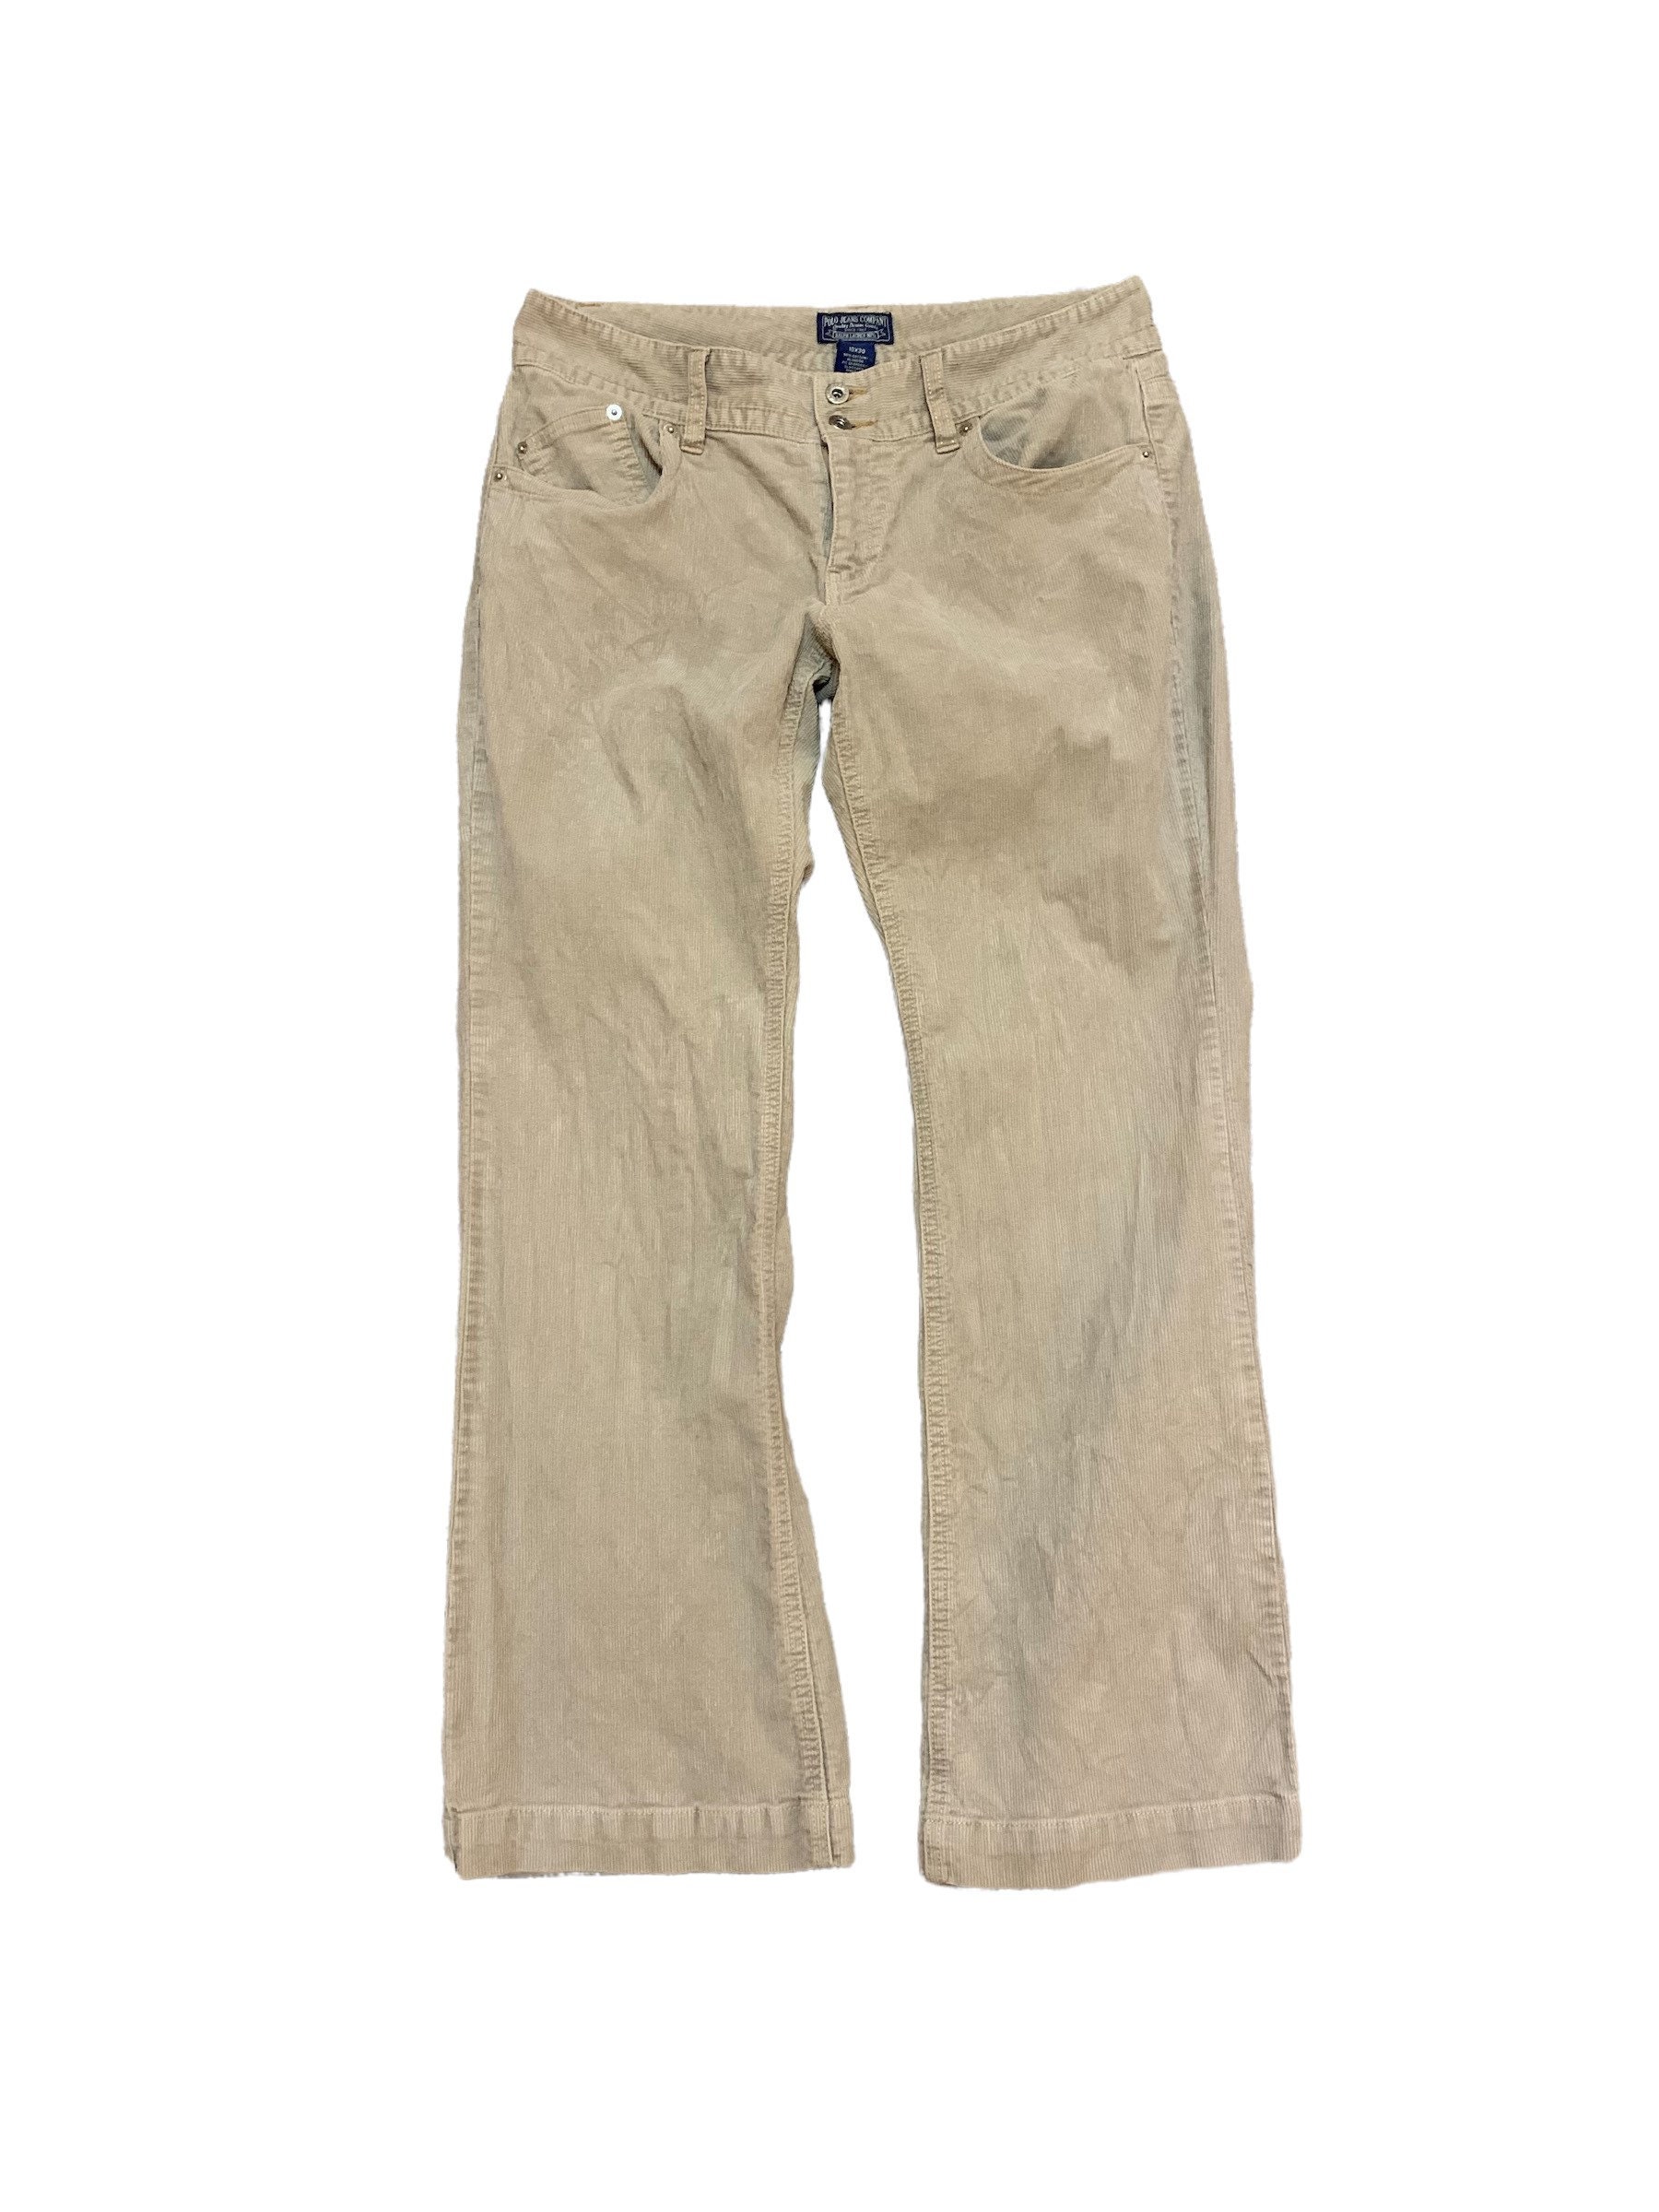 Vintage Polo Jeans Ralph Lauren Corduroy Pants - Etsy